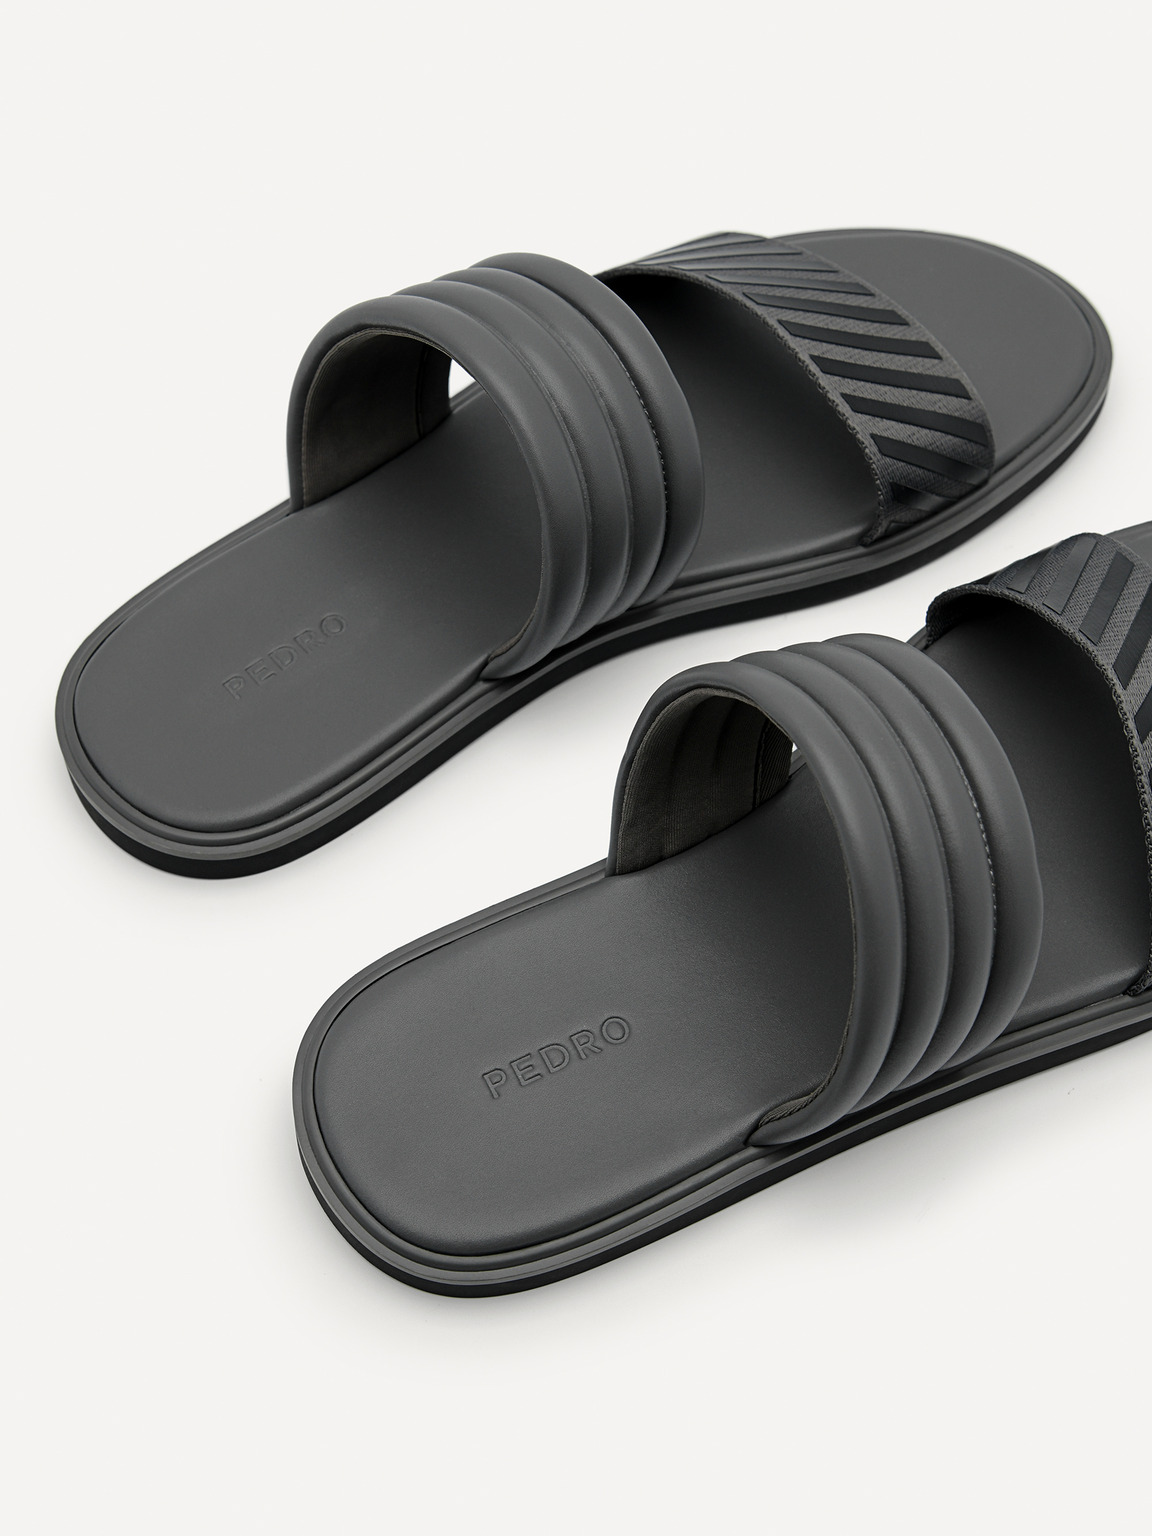 Band Slide Sandals, Dark Grey